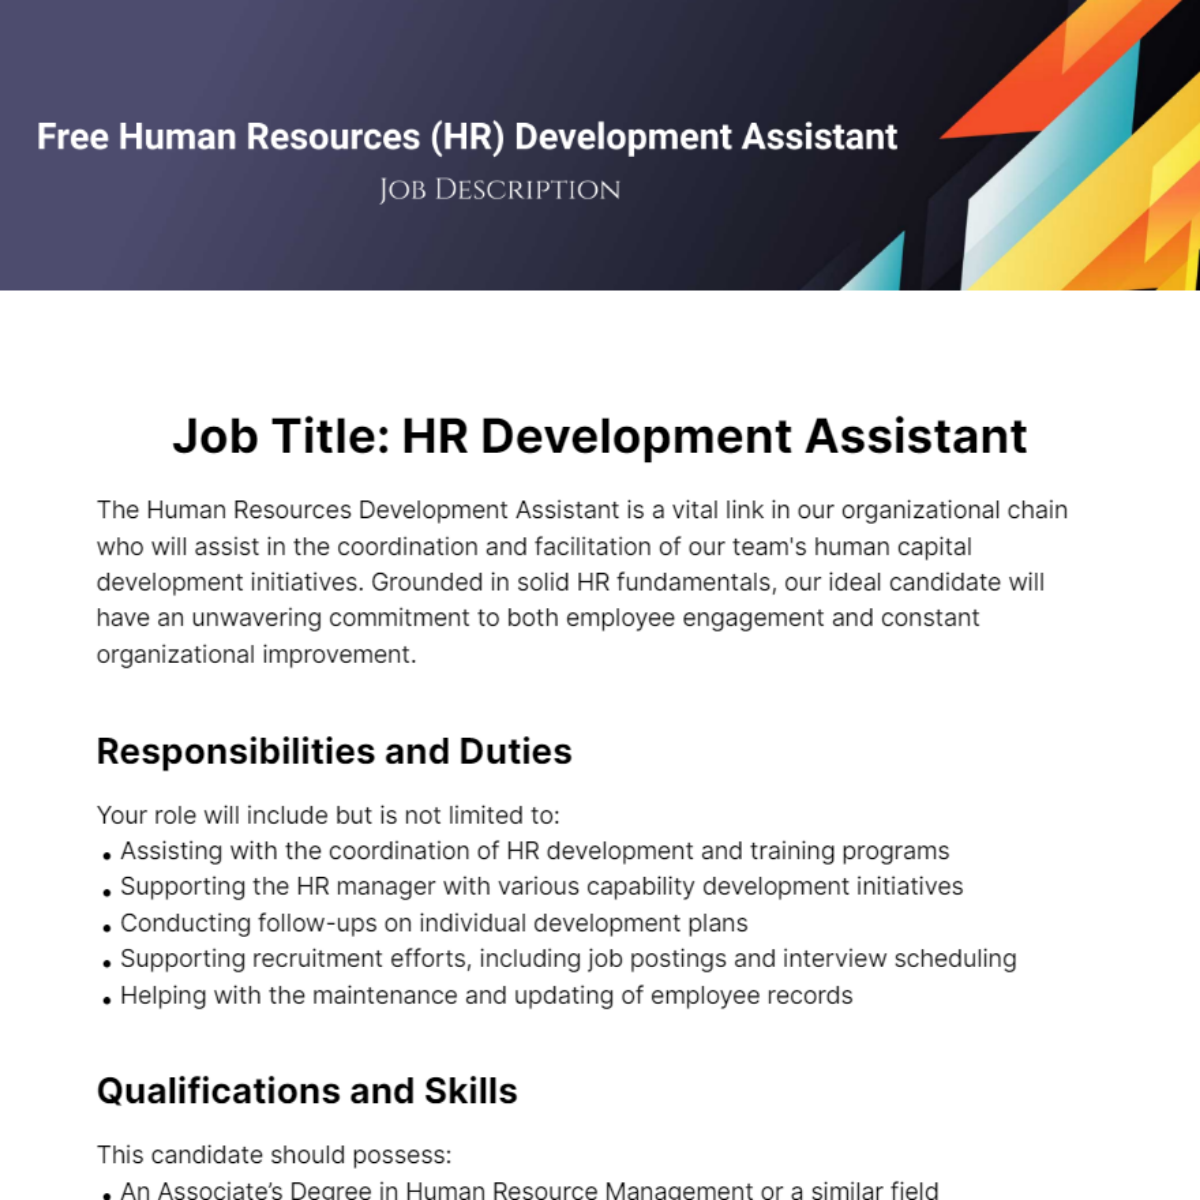 Human Resources (HR) Development Assistant Job Description Template